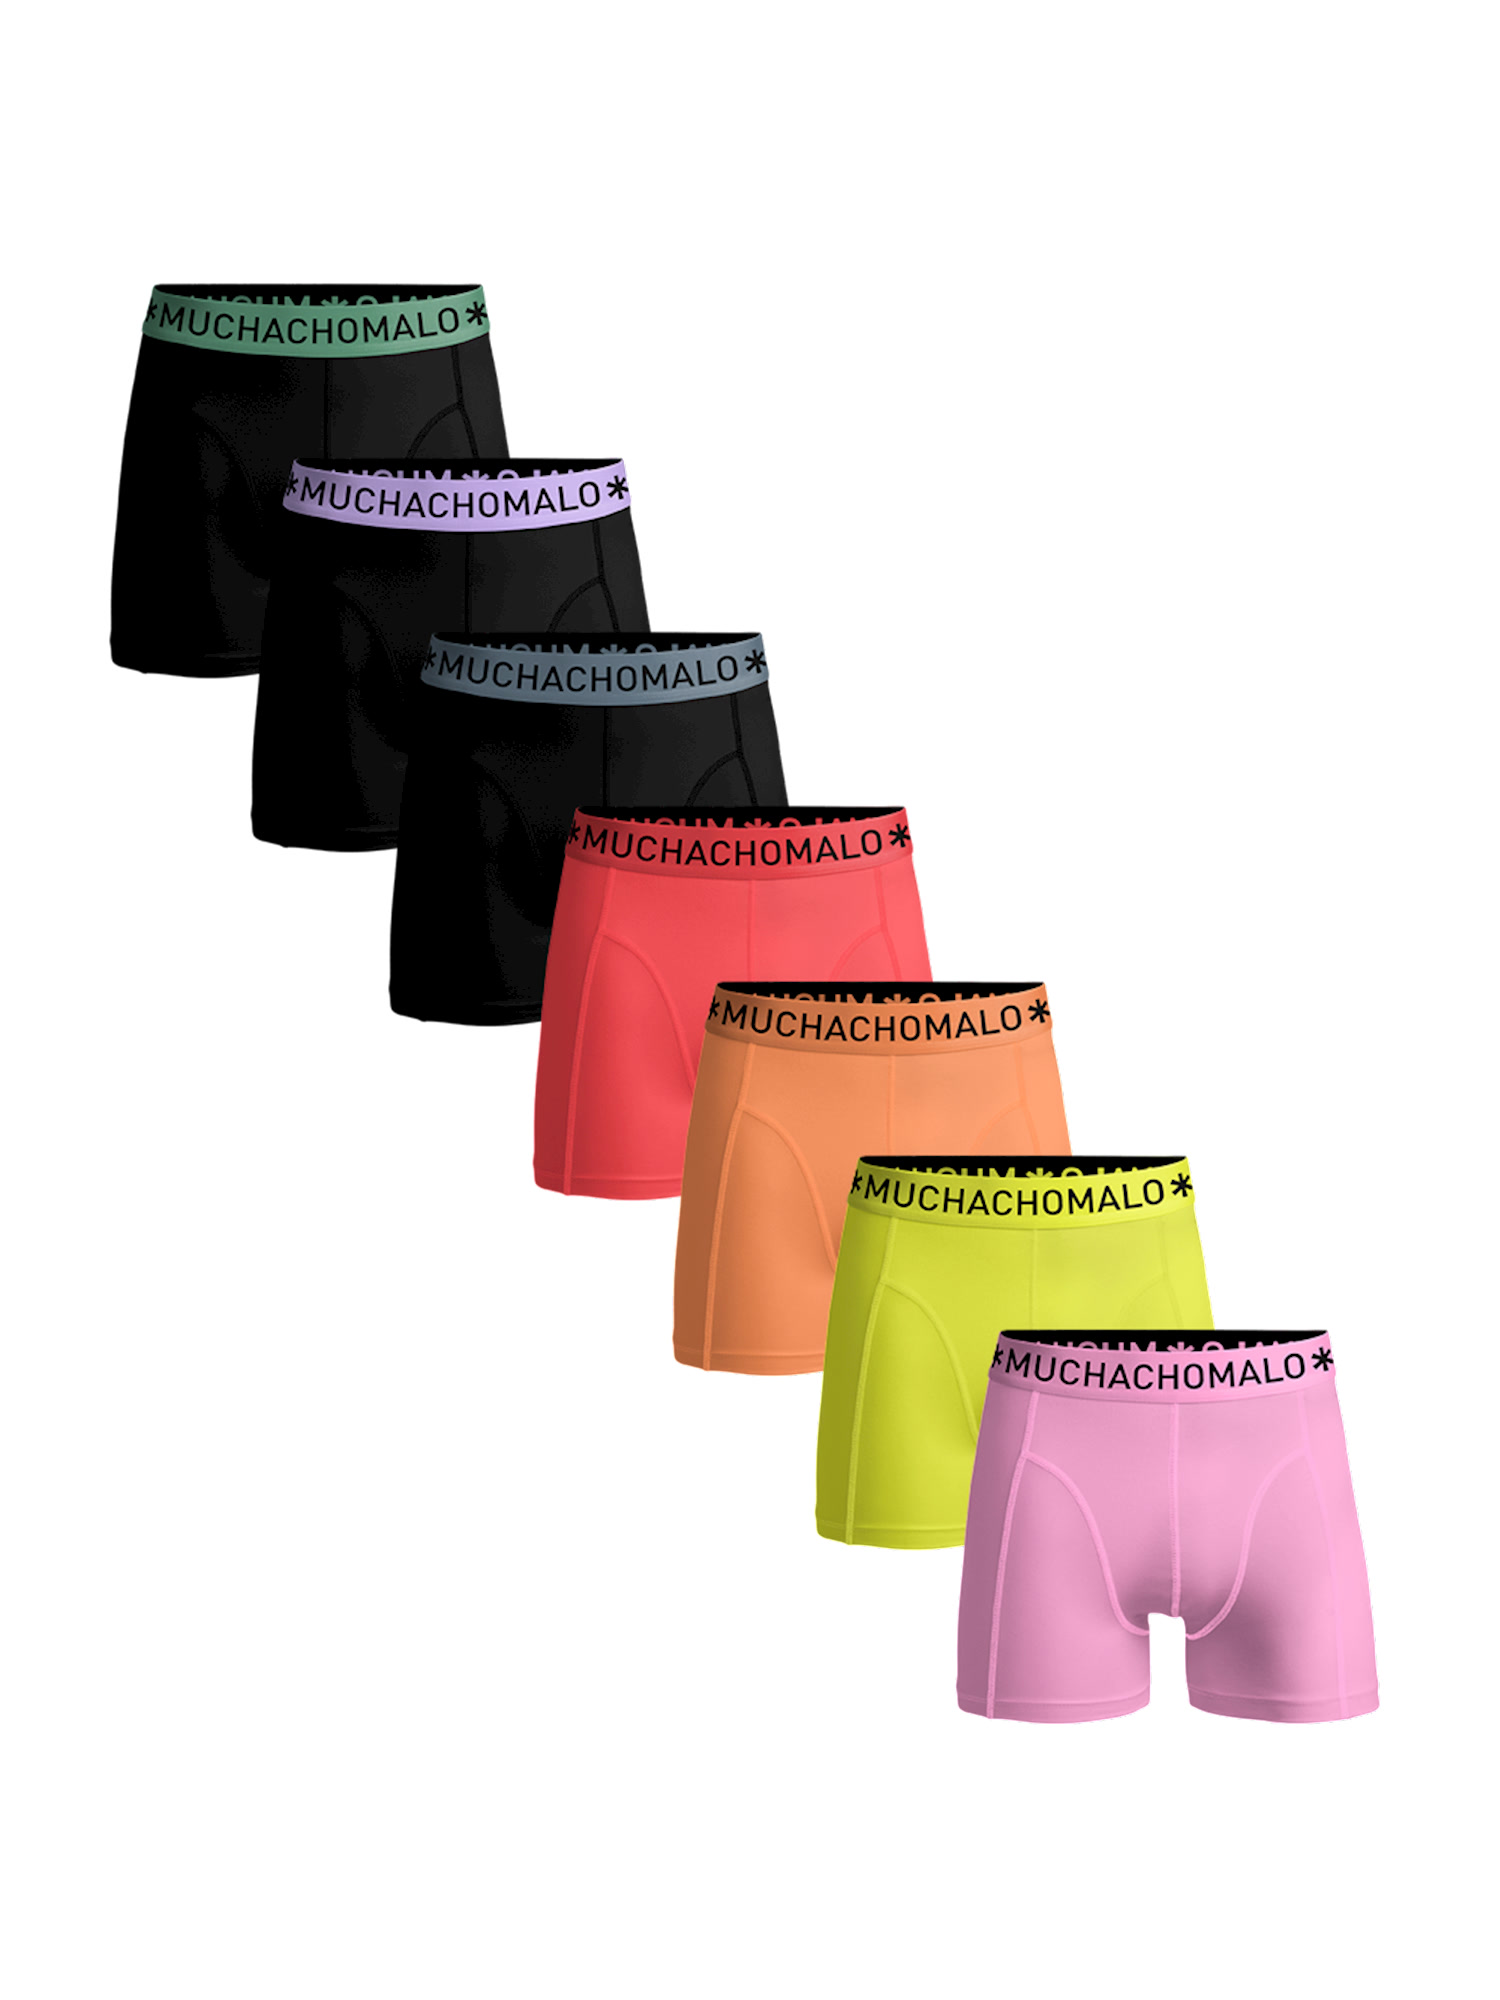 Боксеры Muchachomalo 7er-Set: Boxershorts, цвет Black/Black/Black/Pink/Orange/Yellow/Pink gravity black pink